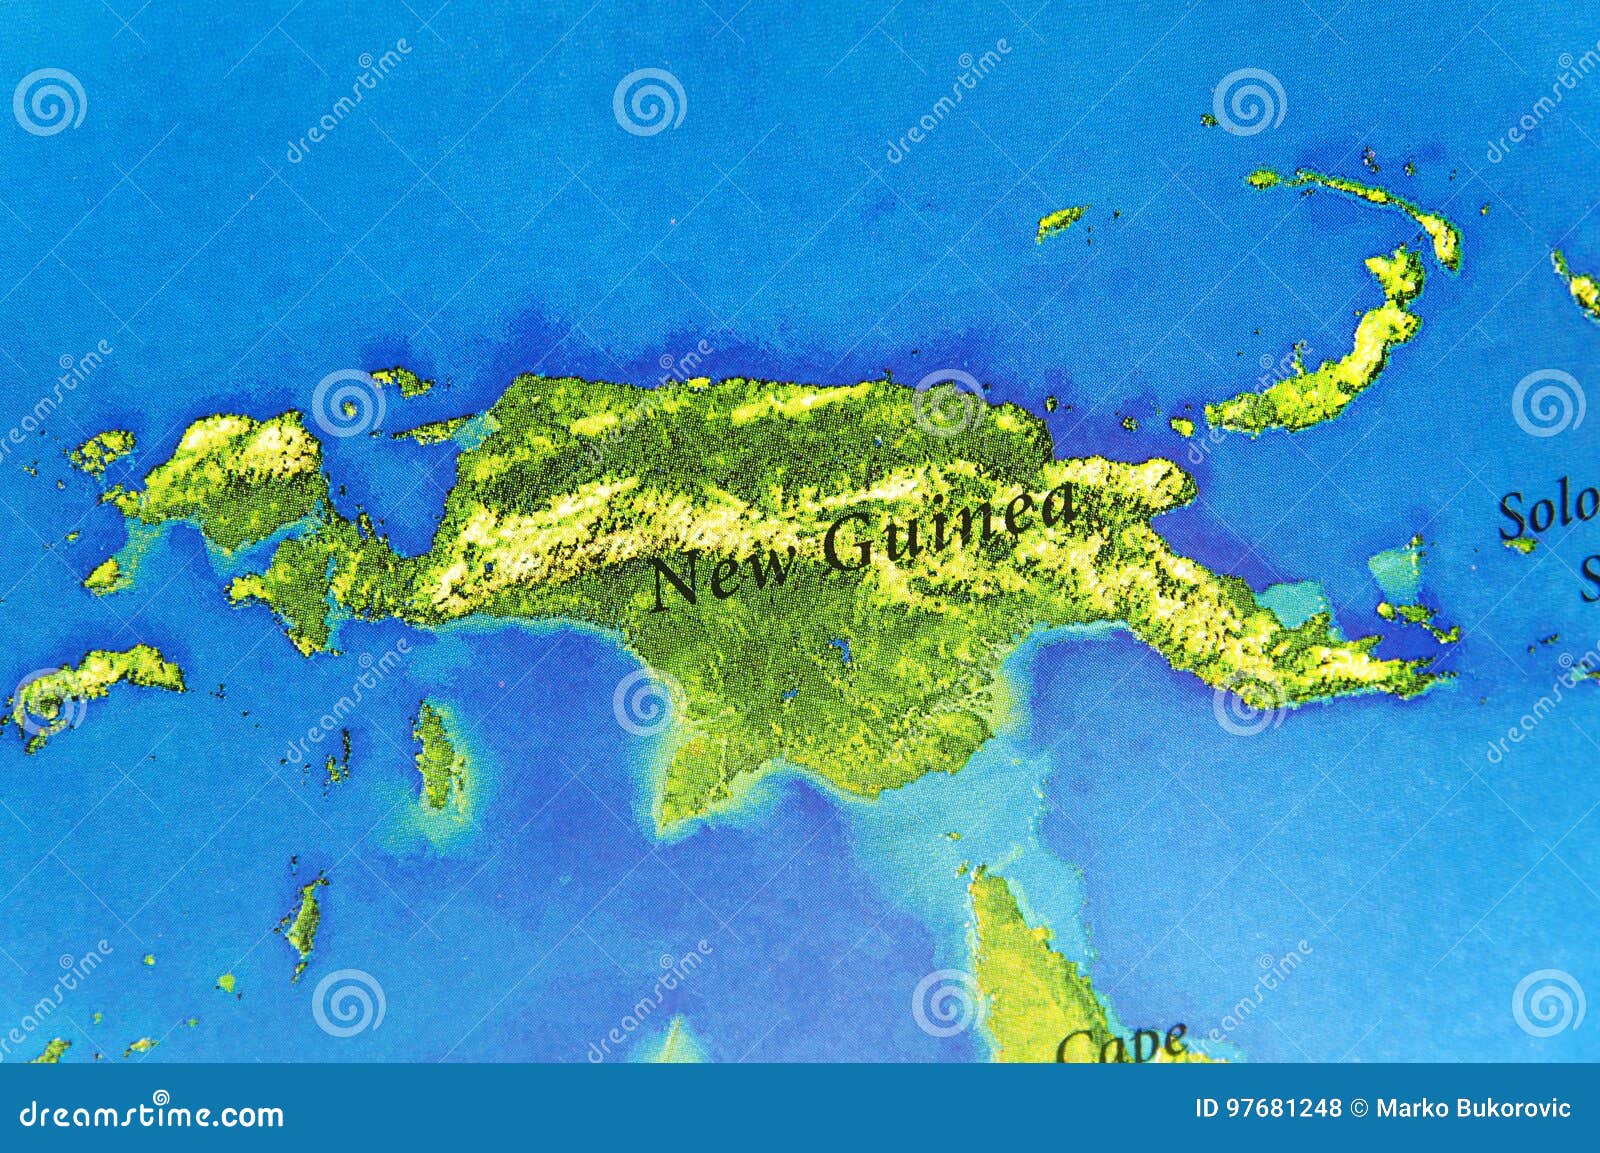 Остров новая гвинея на карте океанов. Остров новая Гвинея физическая карта. Координаты острова новая Гвинея.